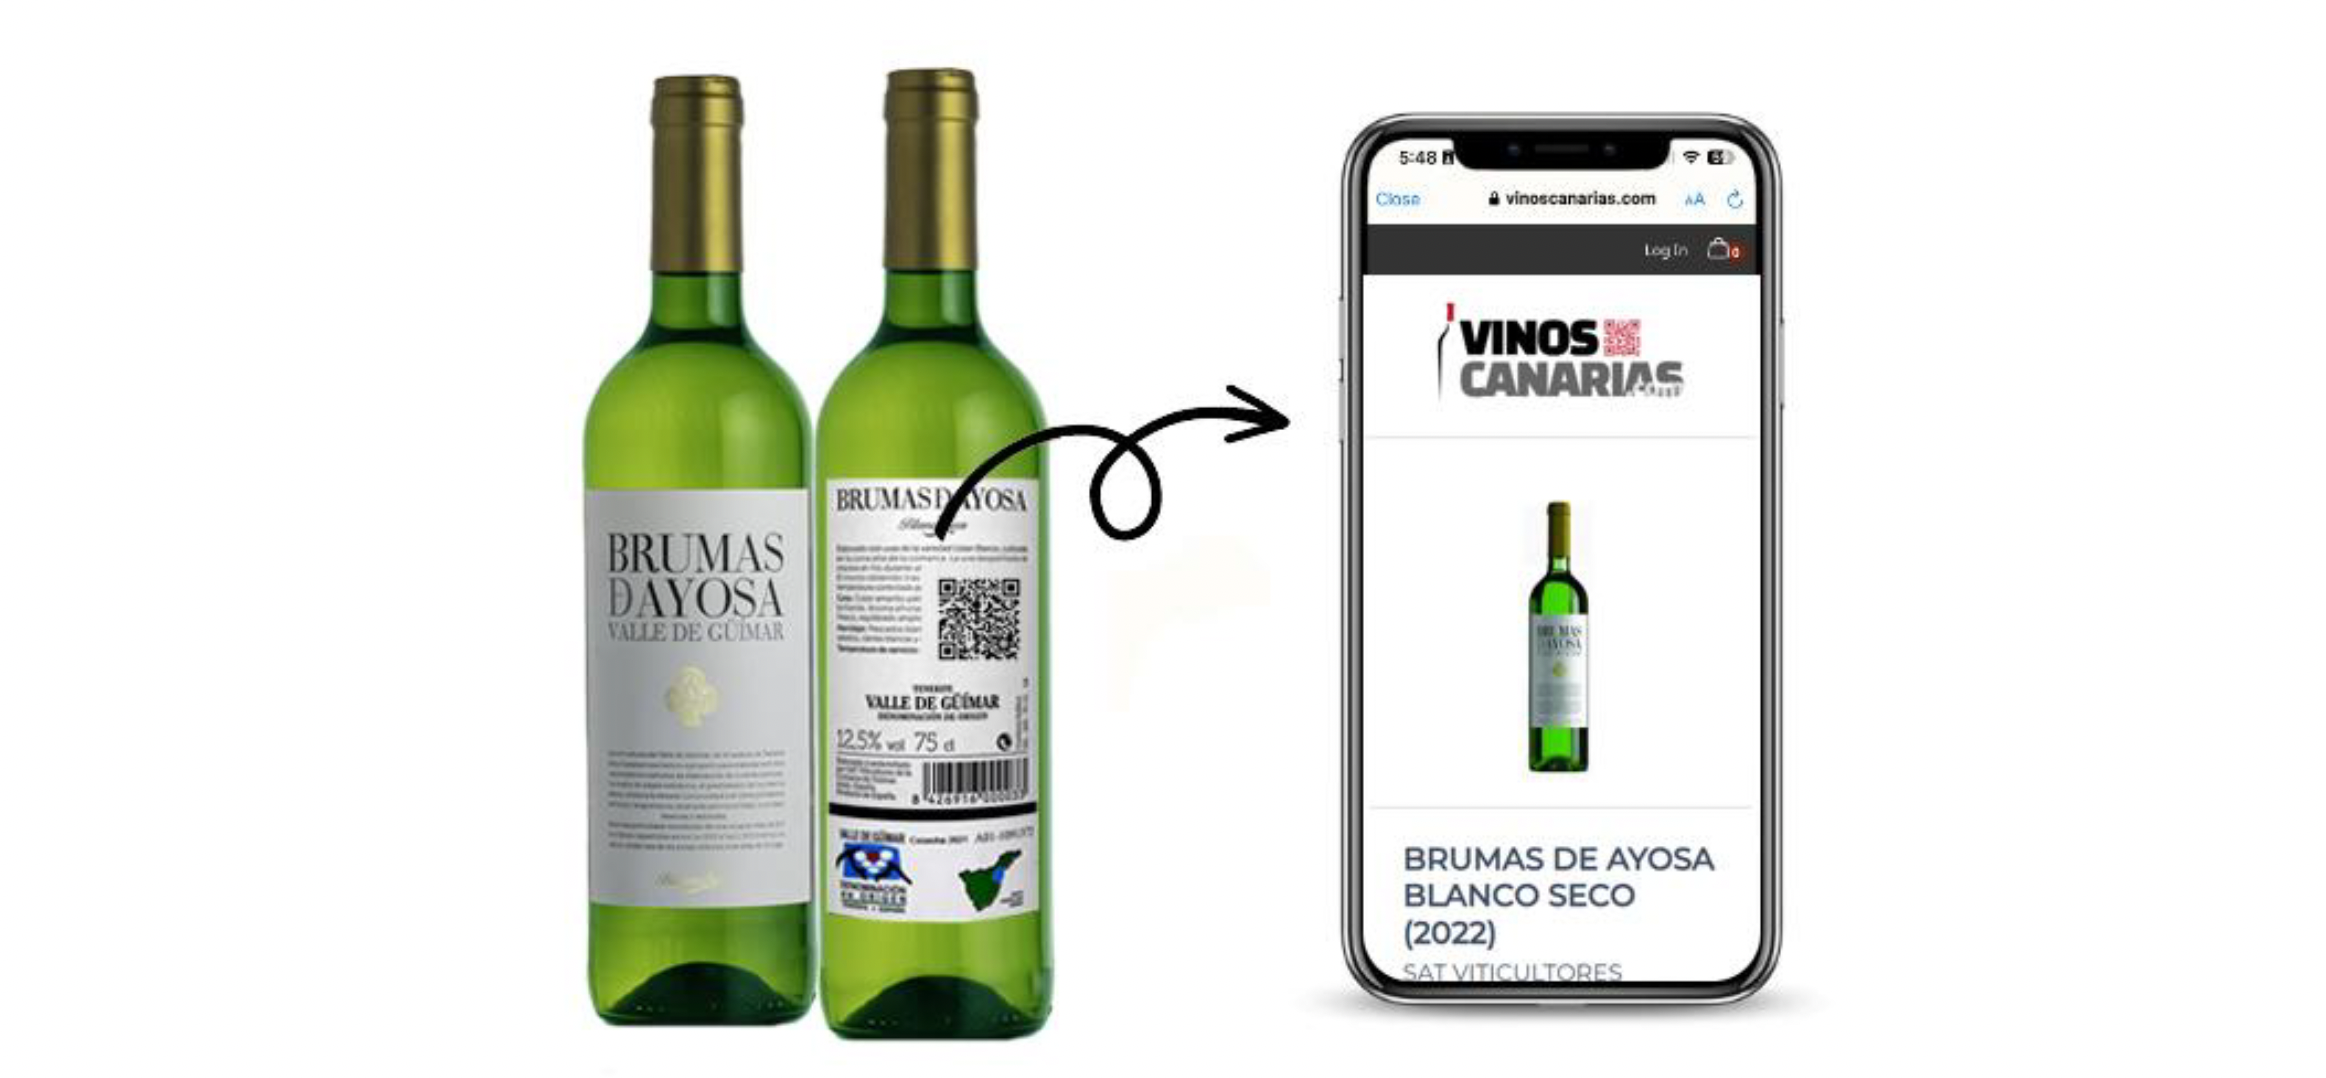 Revolucionaria herramienta digital de etiquetado del vino en Canarias